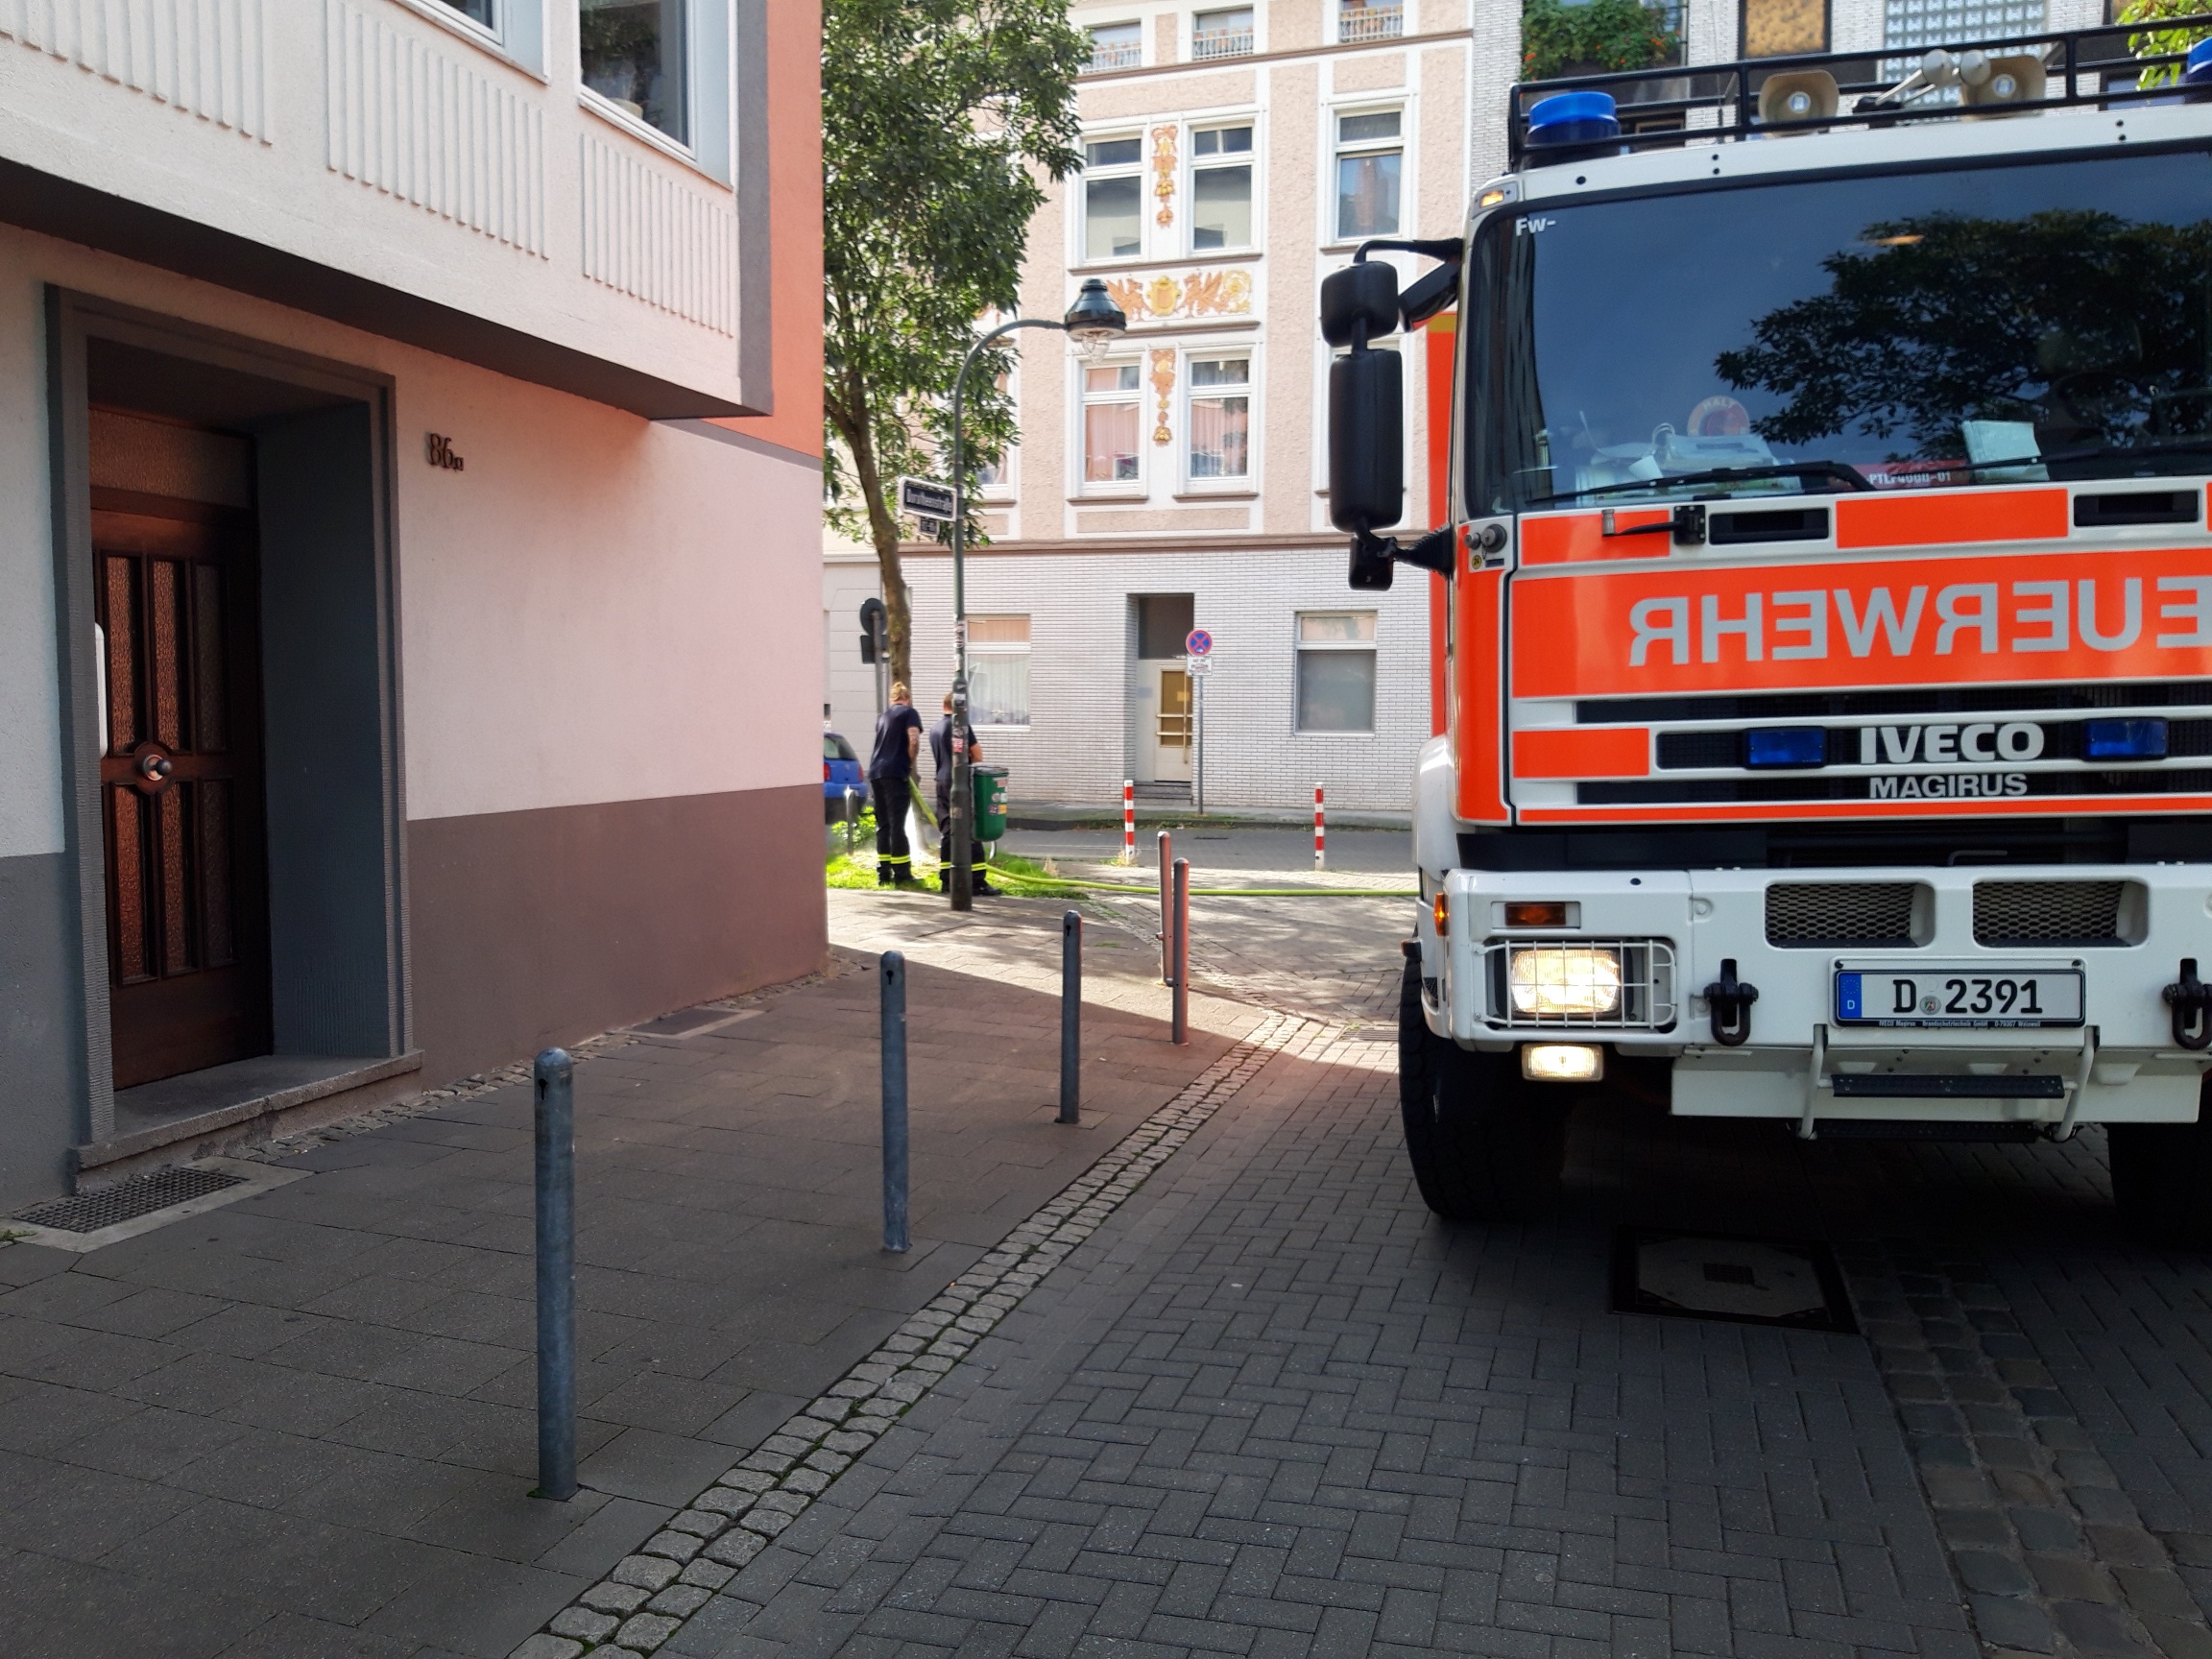 Tolle Aktion der Düsseldorfer Feuerwehr